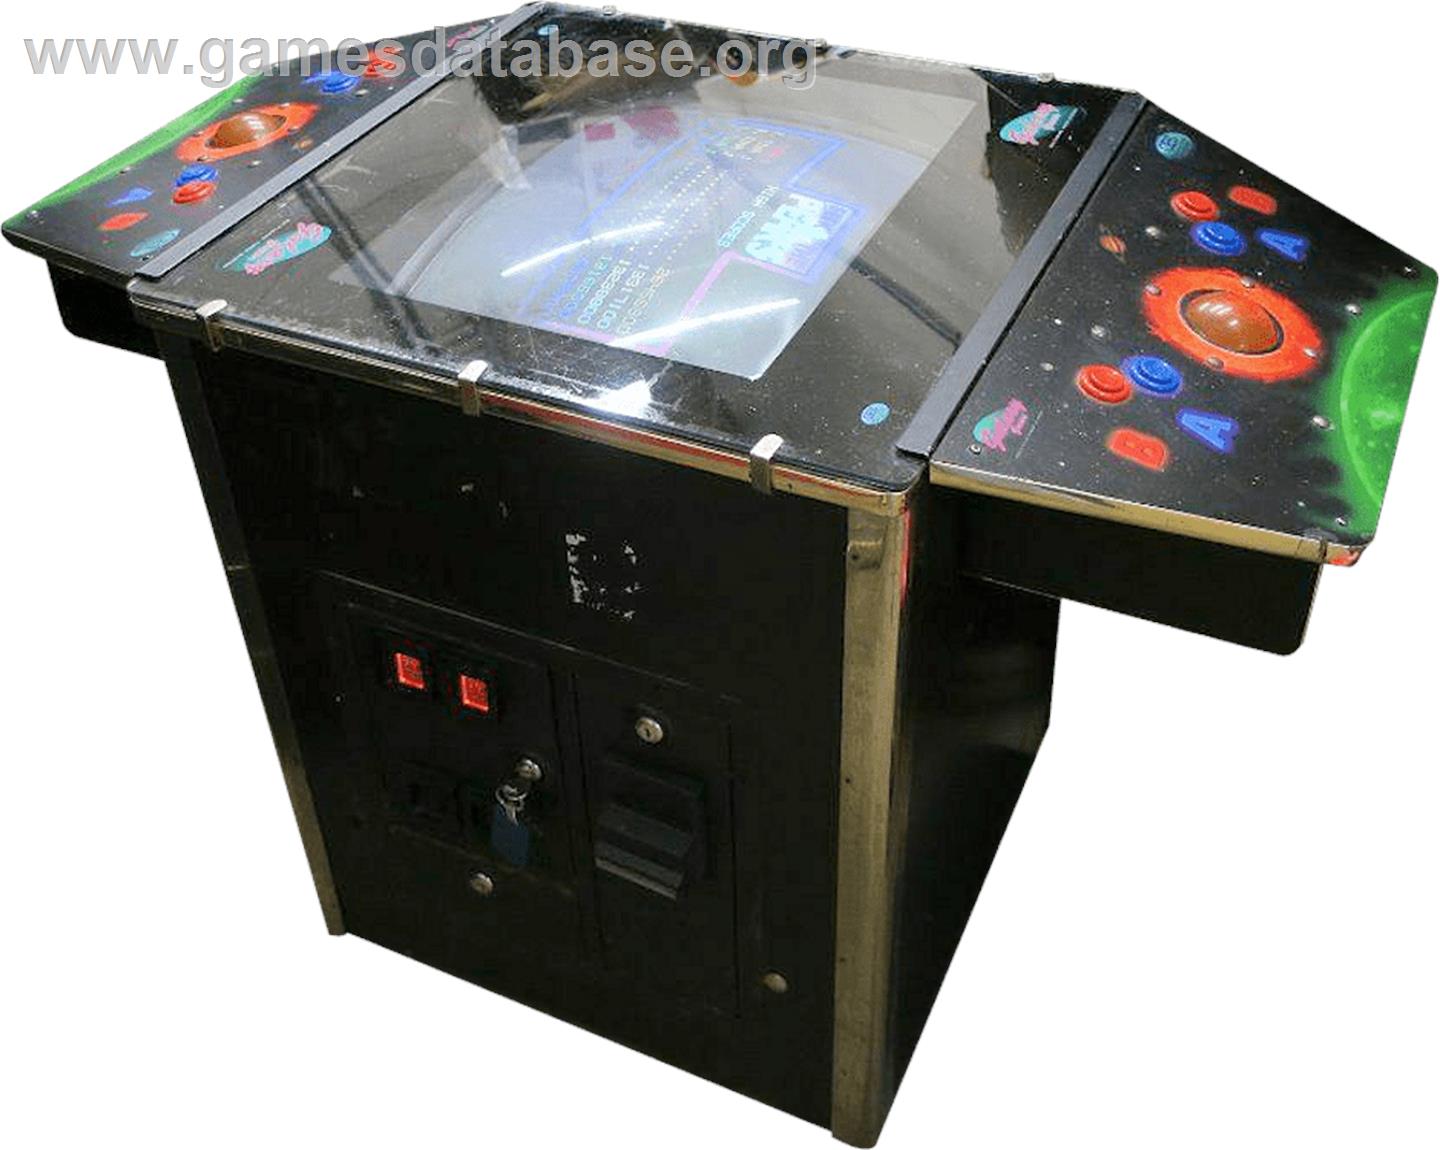 Galaxy Games StarPak 2 - Arcade - Artwork - Cabinet